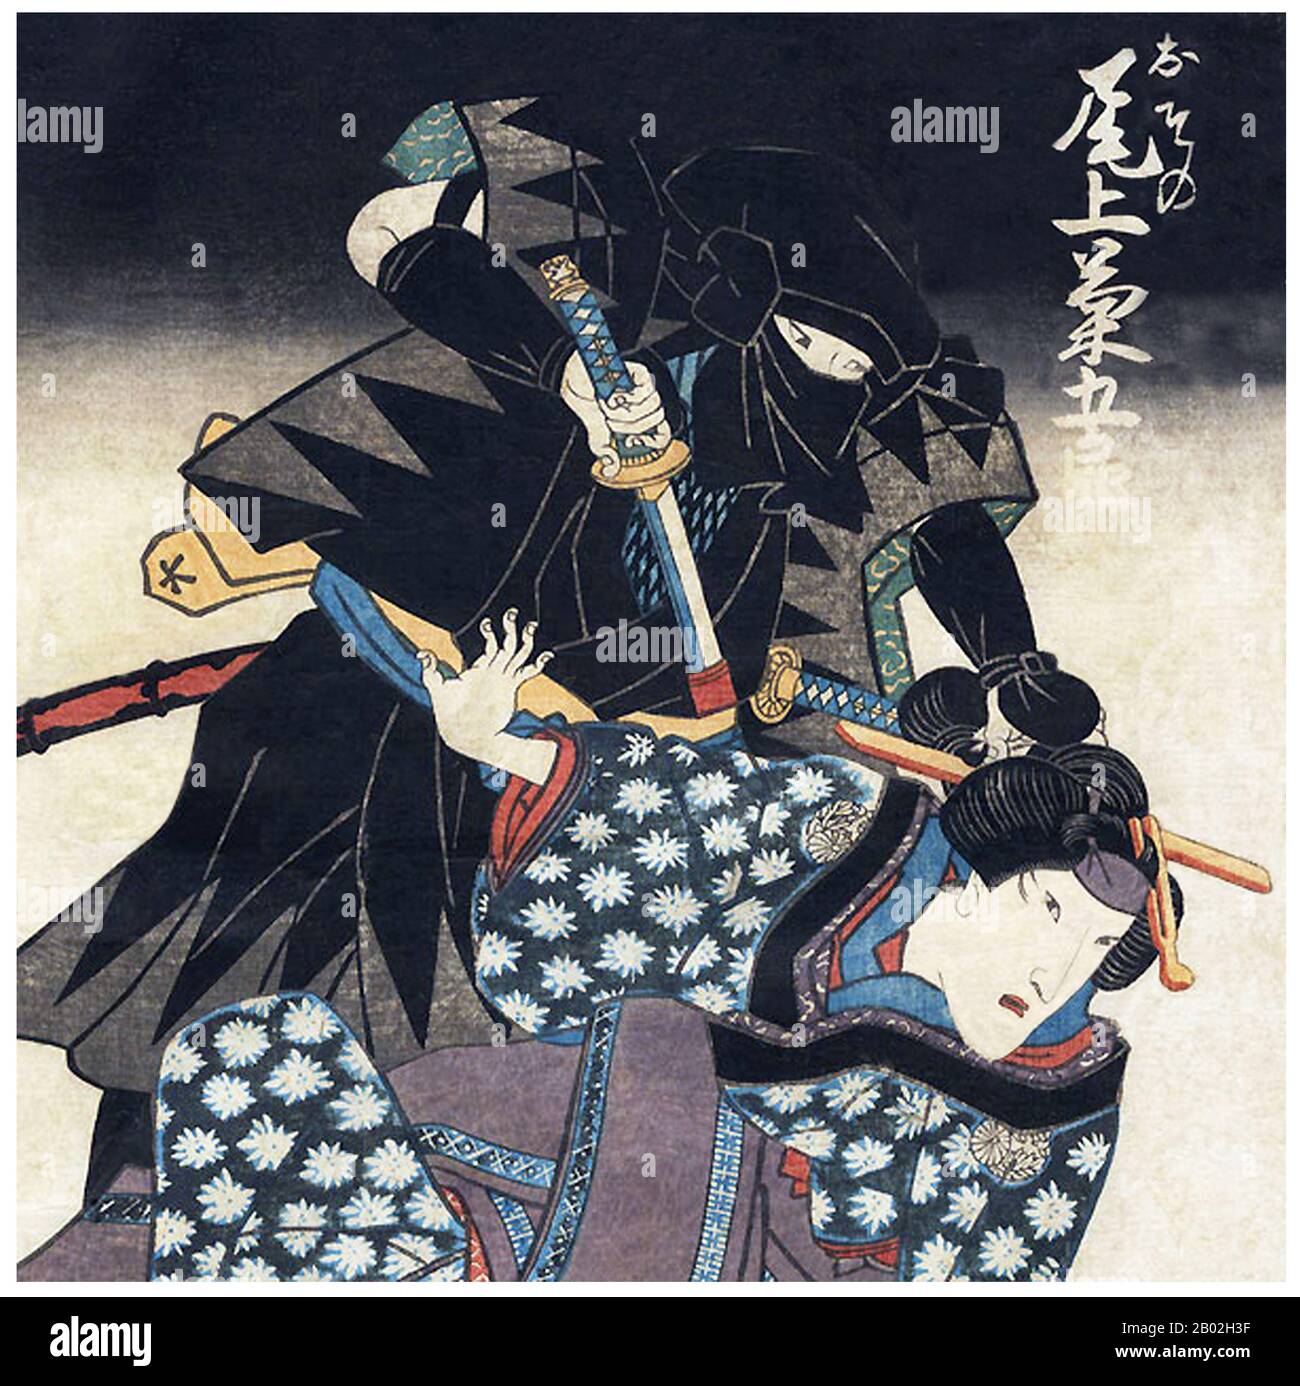 Un ninja (忍者) ou shinobi (忍び) était un agent secret ou un mercenaires au Japon féodal qui s'est spécialisé dans la guerre non orthodoxe. Les fonctions du ninja comprenaient l'espionnage, le sabotage, l'infiltration et l'assassinat, et le combat ouvert dans certaines situations. Leurs méthodes secrètes de la guerre ont contrarié le ninja avec les samouraïs, qui ont observé des règles strictes sur l'honneur et le combat. Le shinobi proprement dit, un groupe spécialement formé de espions et de mercenaires, est apparu dans la période du Sengoku ou des "États belligérants", au XVe siècle, mais les antitecédents peuvent avoir existé au XIVe siècle, et peut-être même au XIIe siècle Banque D'Images